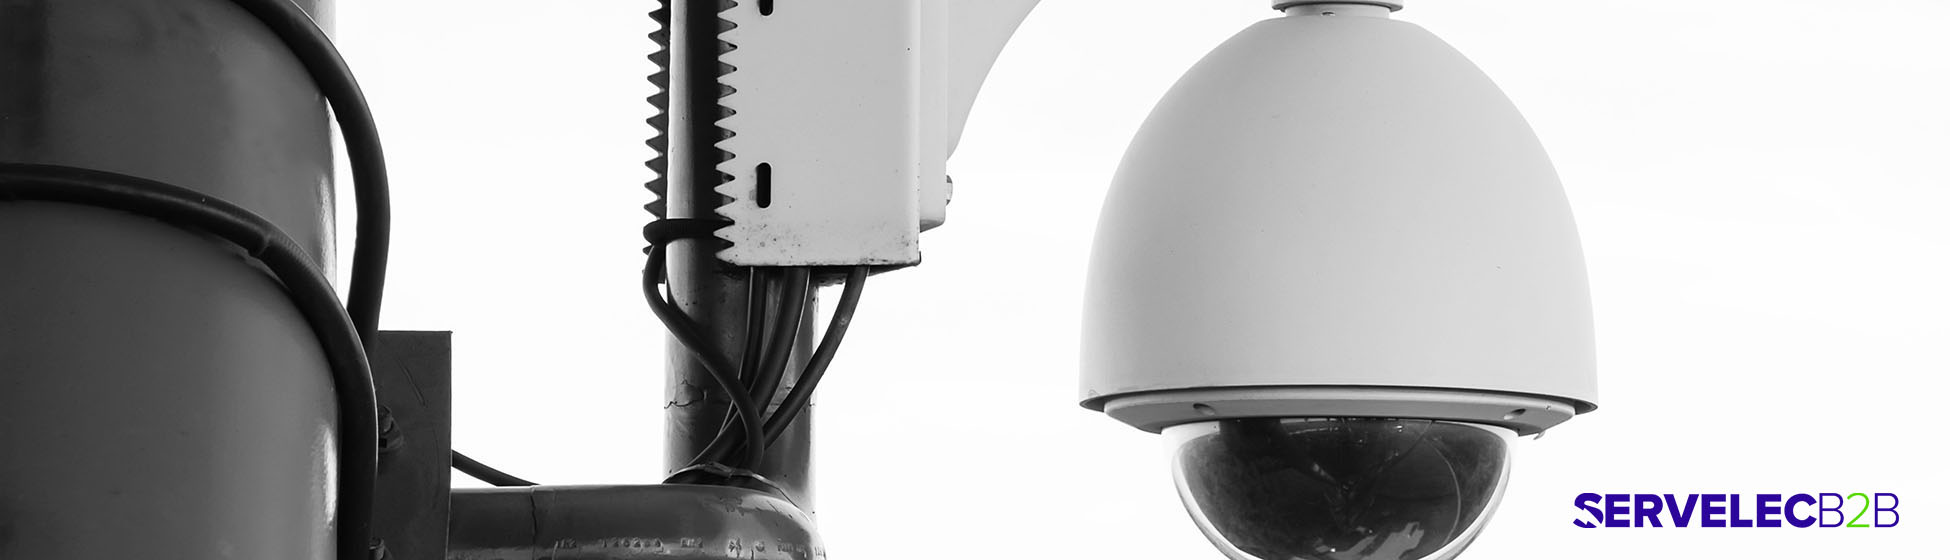 Installation systeme video surveillance